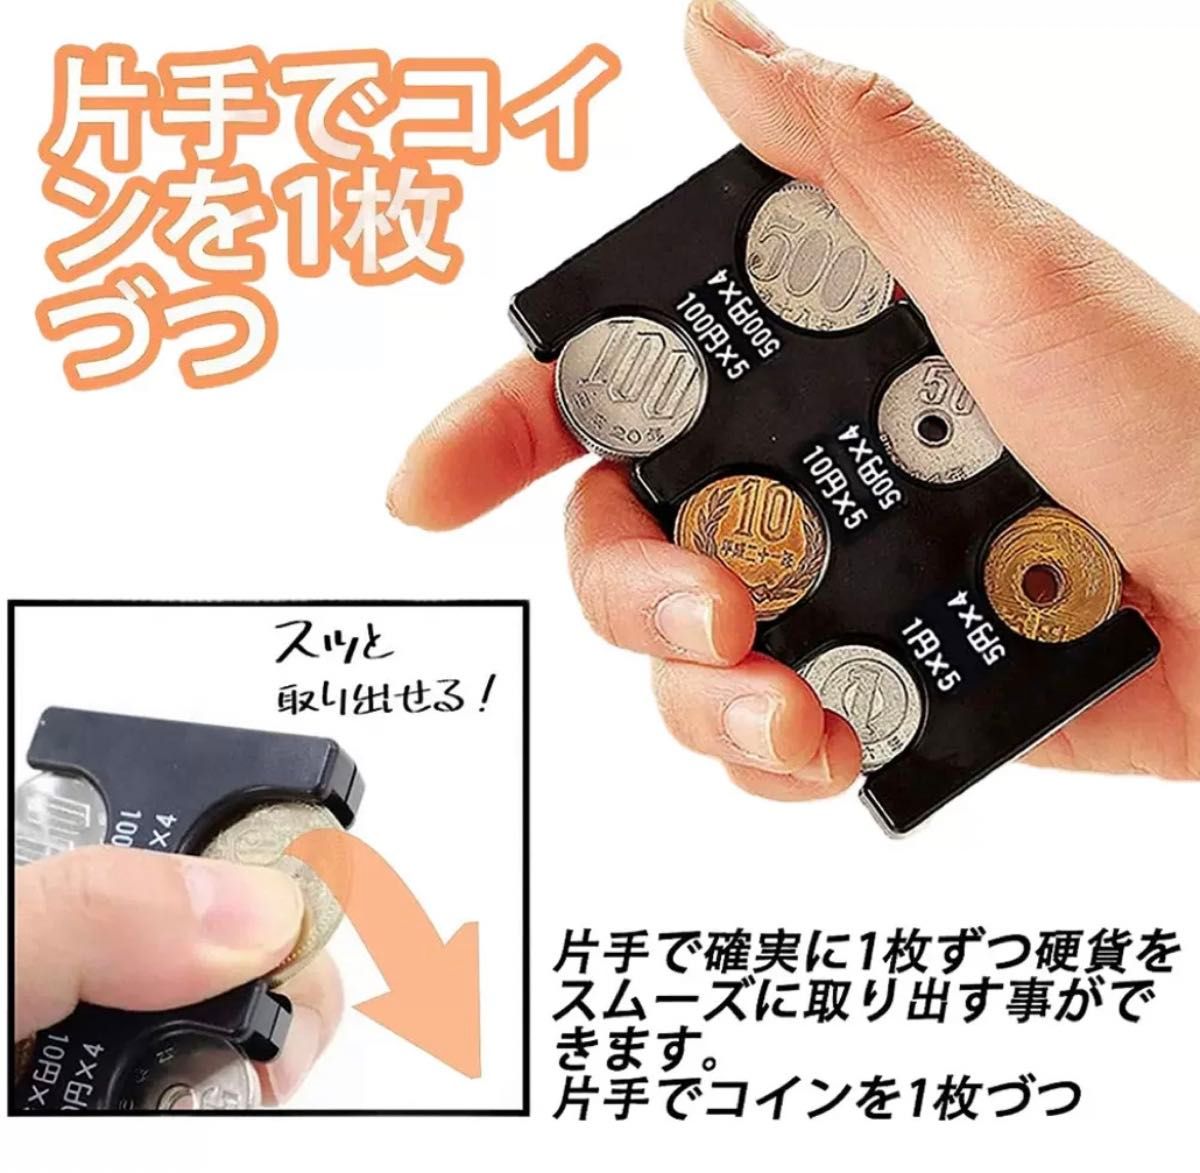 コインホルダー 小銭 財布 コイン収納 軽量 コインケース コンパクト 黒 テールランプ コイン収納